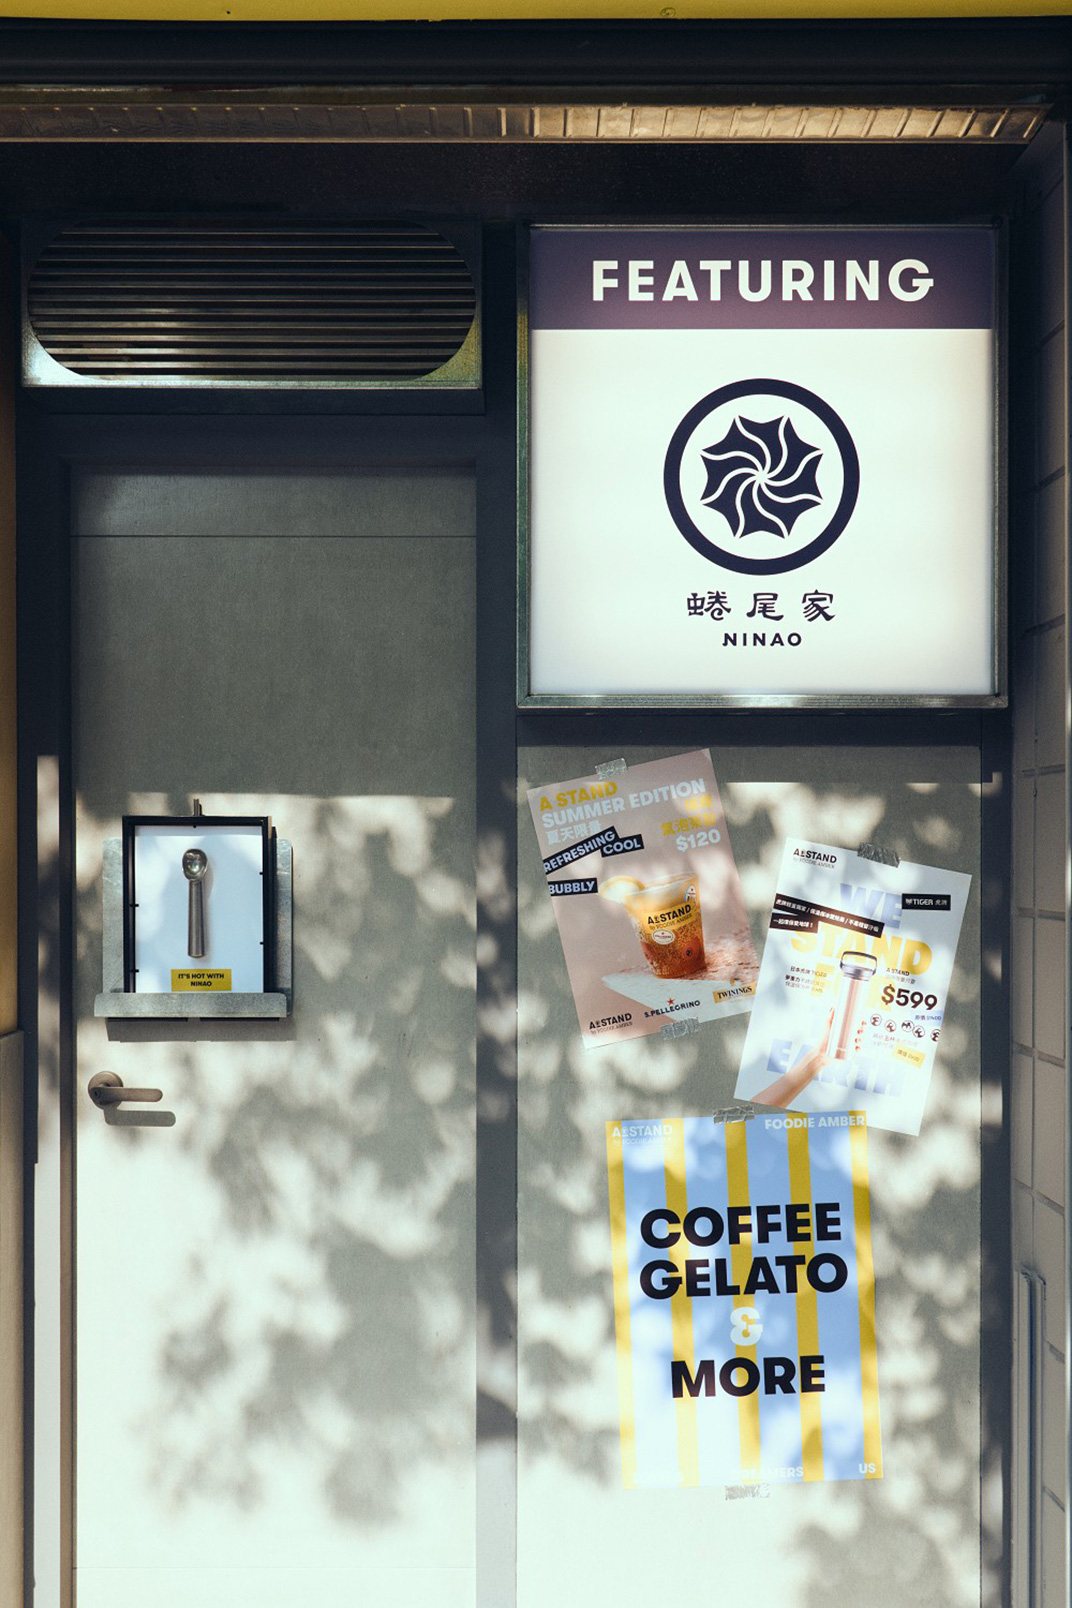 饮食文化美学饮品店A STAND 台湾 饮品店 咖啡店 字体设计 插画设计 绿色 logo设计 vi设计 空间设计